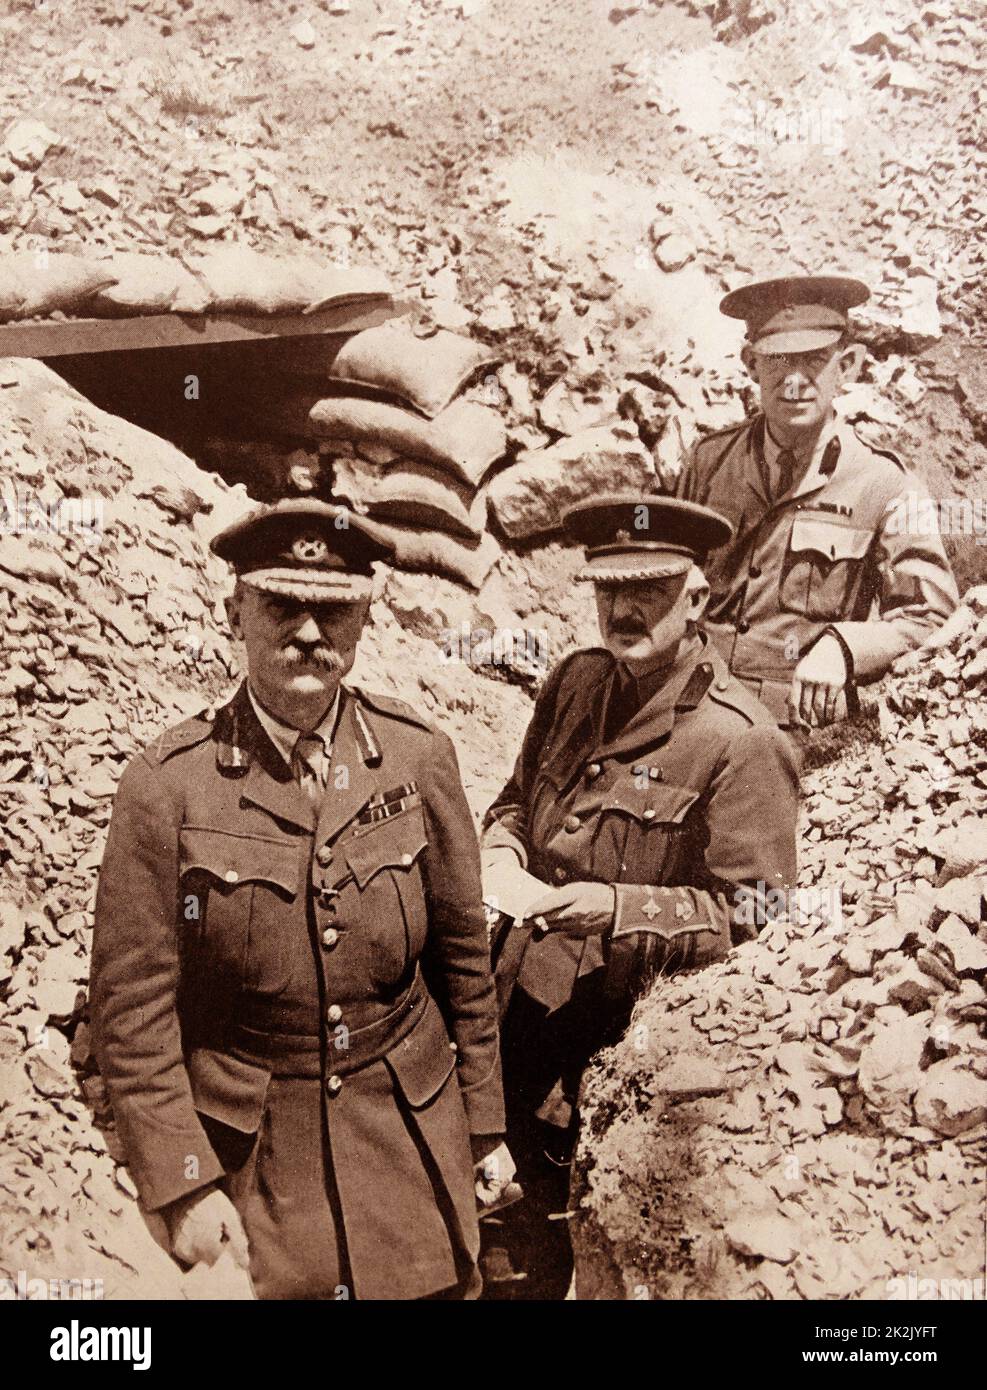 Le Lieutenant-général Sir Aylmer Gould Hunter-Weston était un général de l'Armée britannique qui a servi pendant la première Guerre mondiale à Gallipoli. Photo : le major-général Aylmer Hunter-Weston (devant gauche) et le personnel de Cape Helles, Gallipoli, 1915. Banque D'Images